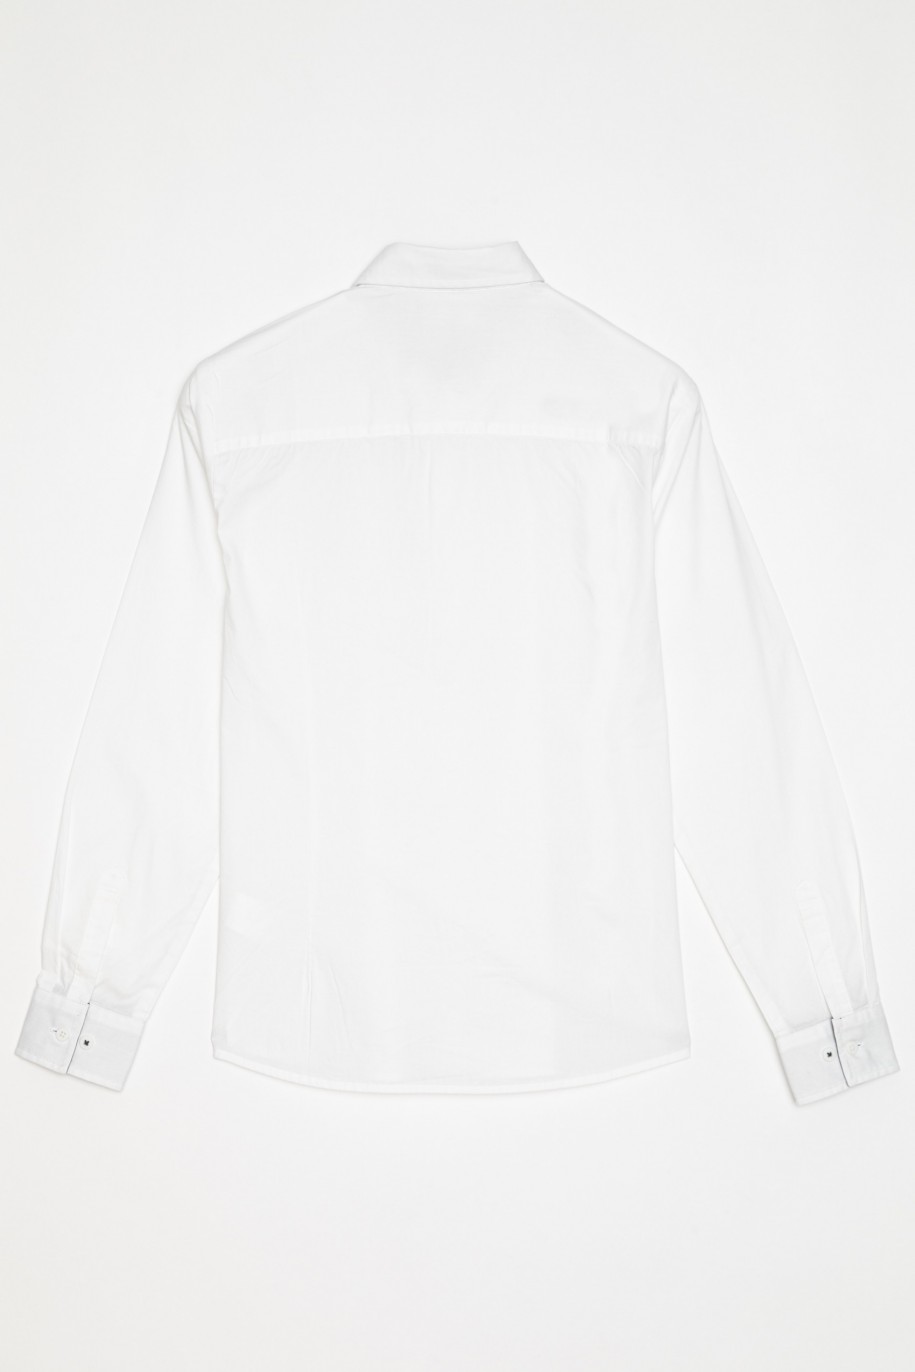 Elegancka biała koszula dla chłopaka - 22614